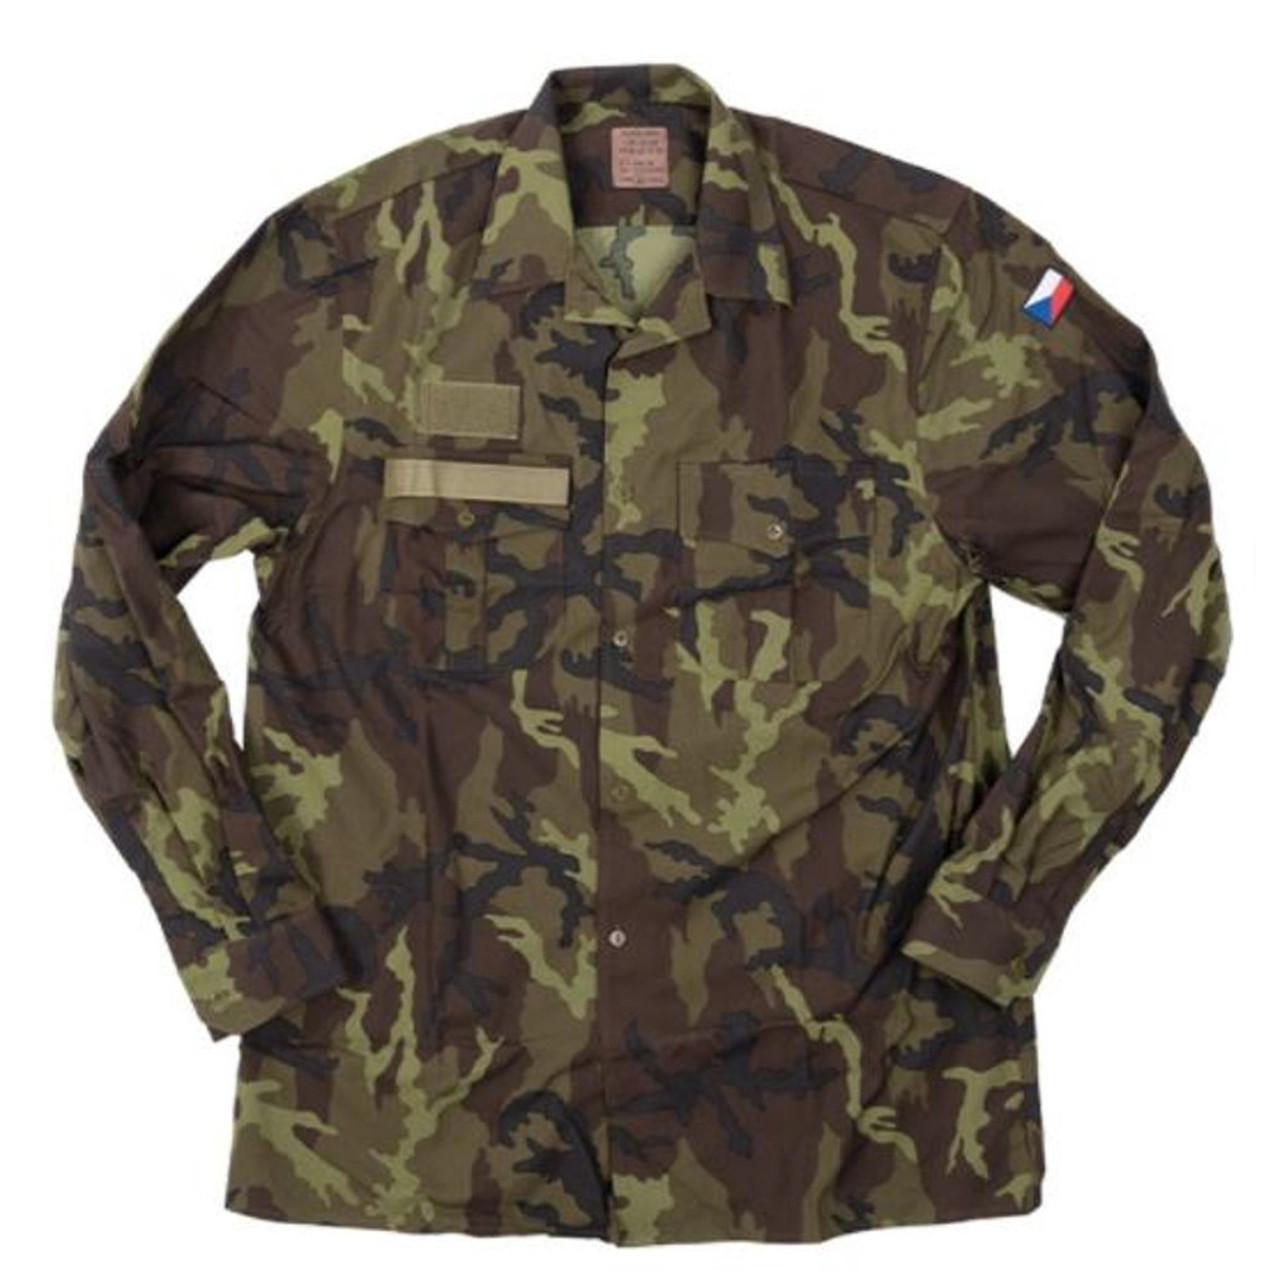 Czech M95 Camo Field Jacket like New